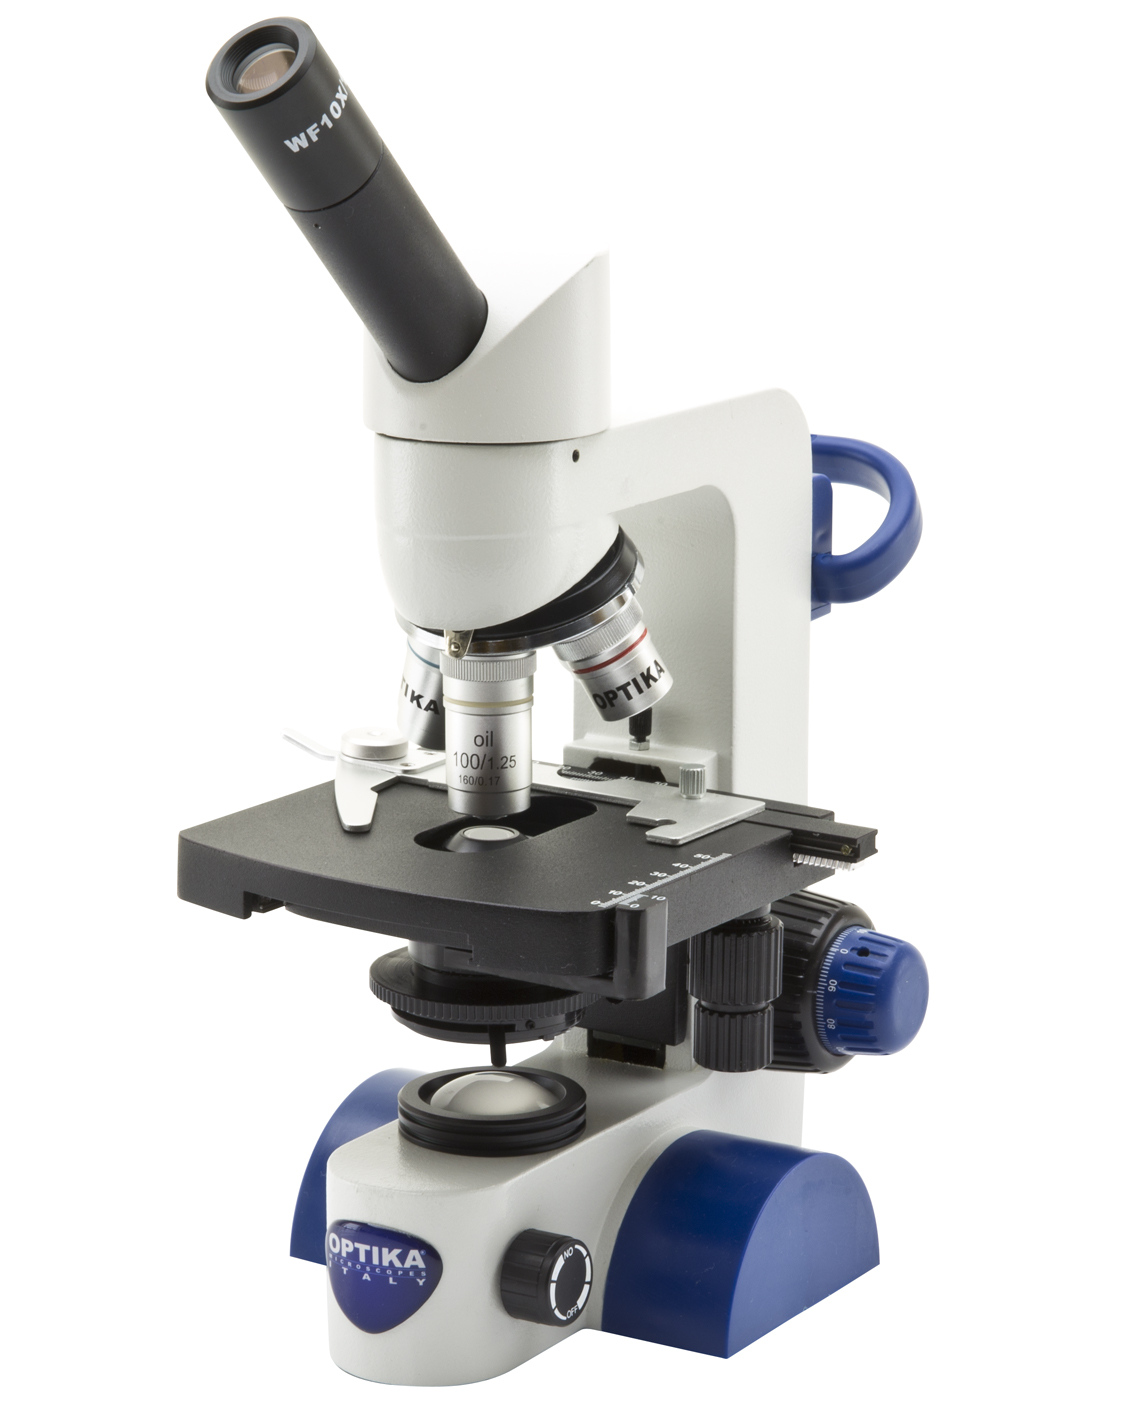 กล้องจุลทรรศน์แบบแสงตกกระทบสำหรับงานวัสดุและโลหะวิทยา (Metallurgical Upright Microscope) ยี่ห้อ OPTIKA รุ่น B-65